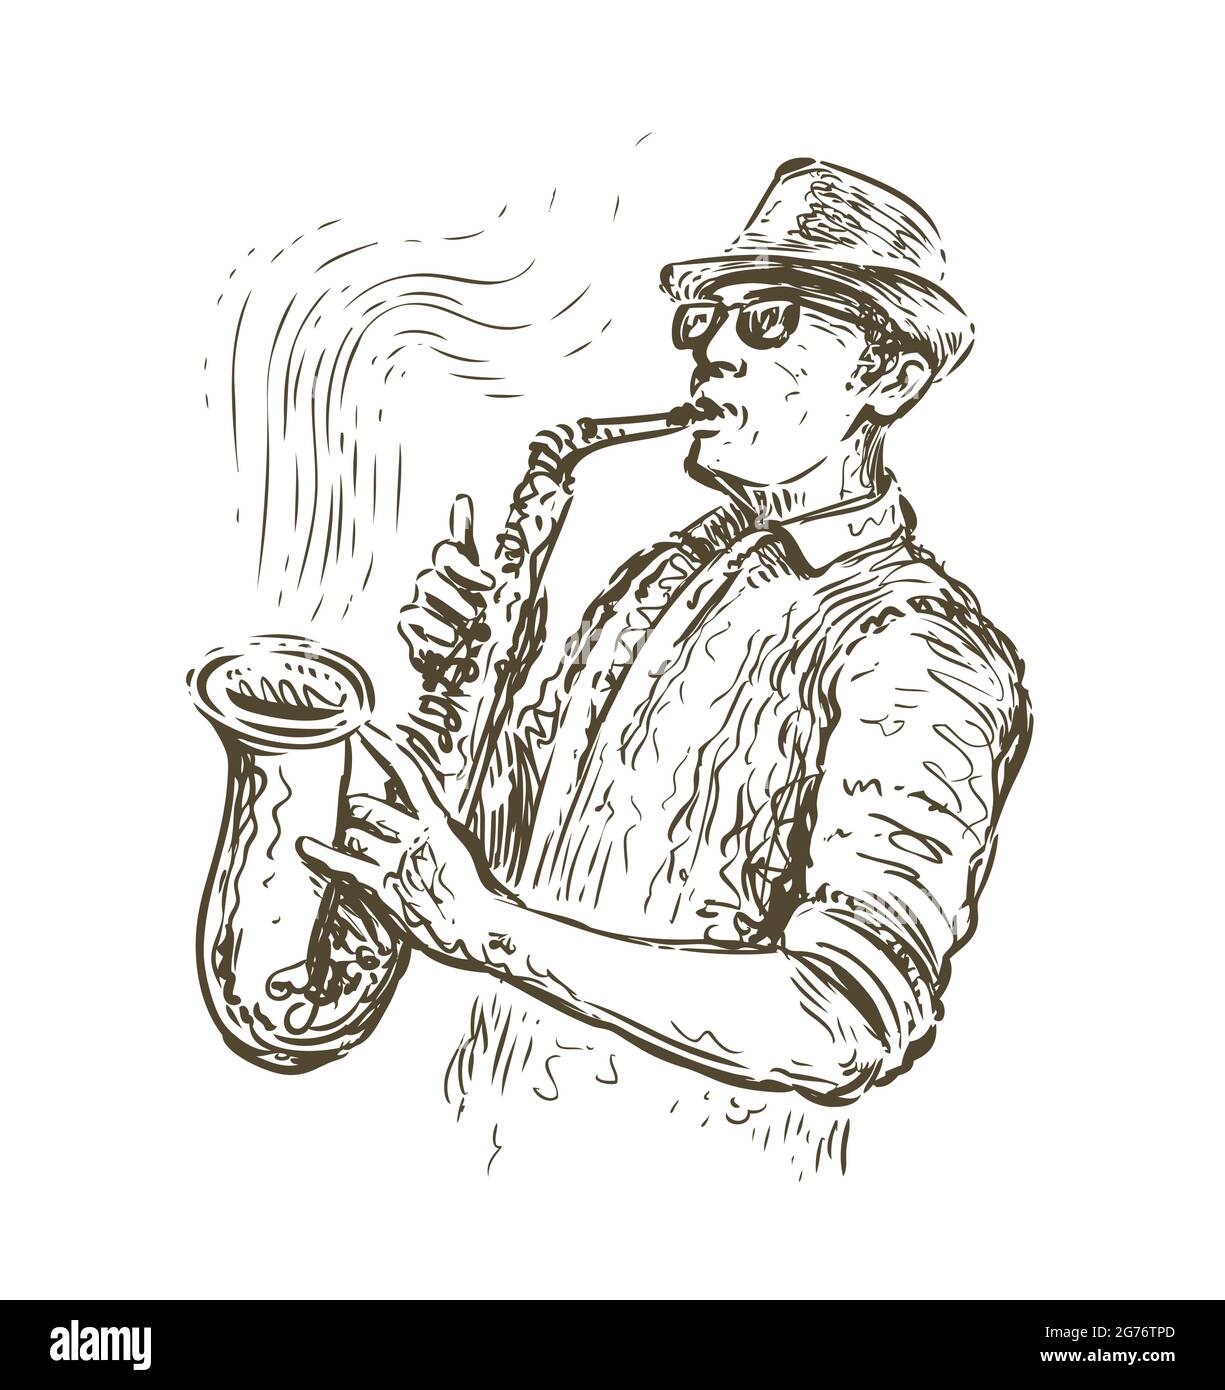 Hand Sketch Jazz Musician Vector Illustration Stock Vector (Royalty Free)  1466416400 | Shutterstock